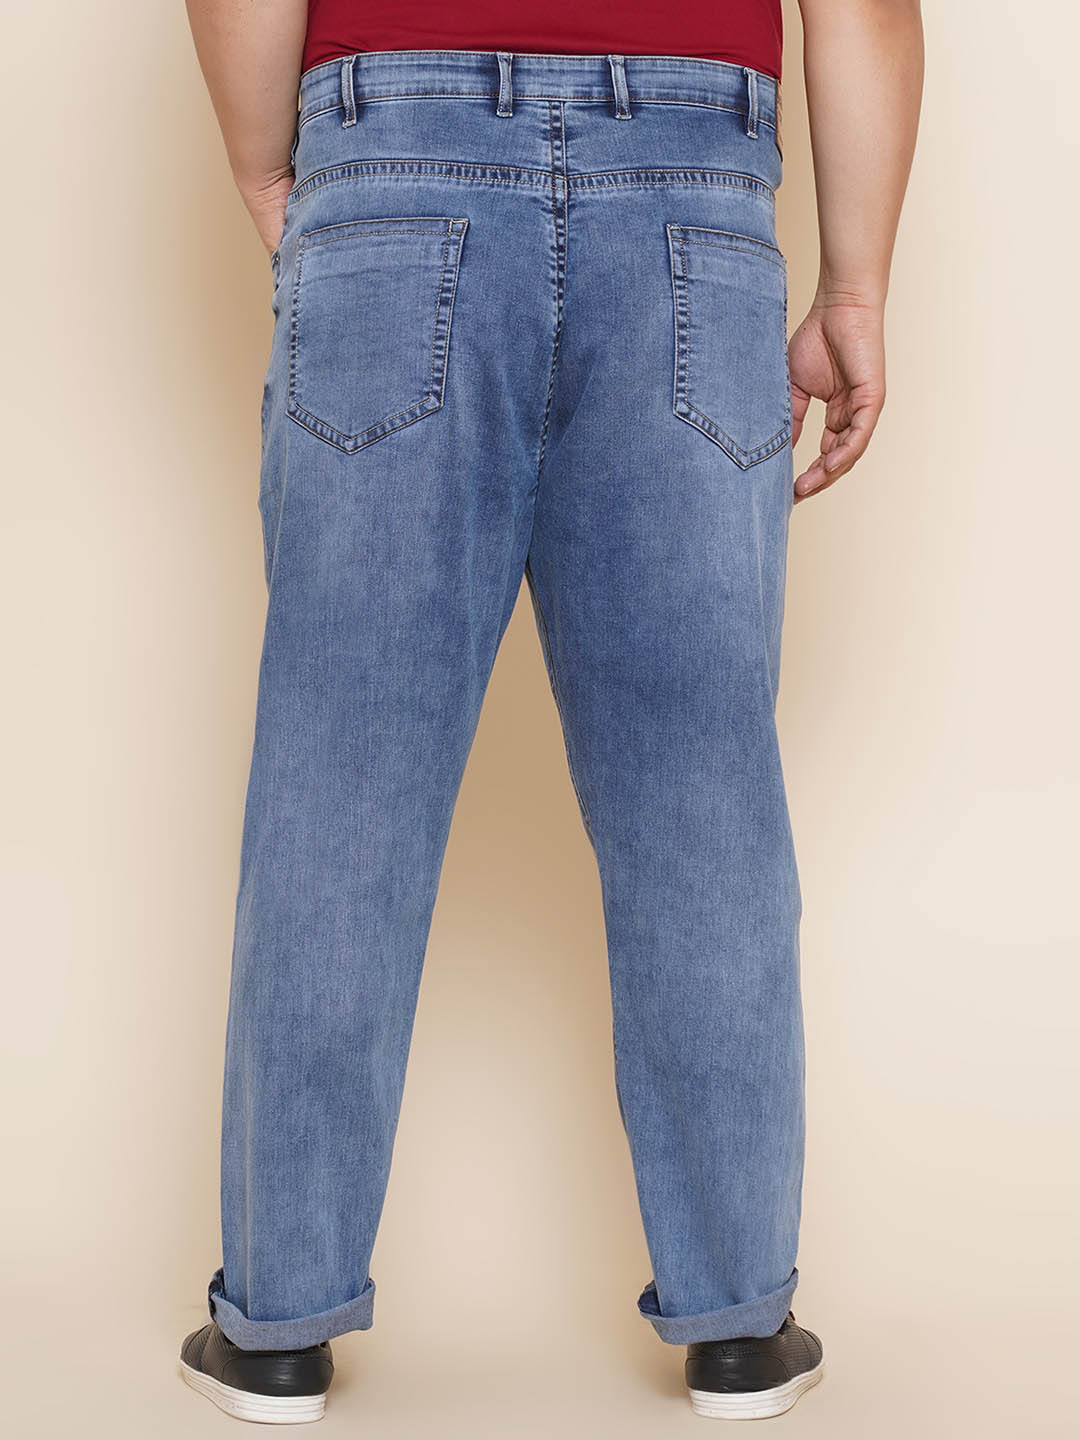 bottomwear/jeans/JPJ12305/jpj12305-5.jpg